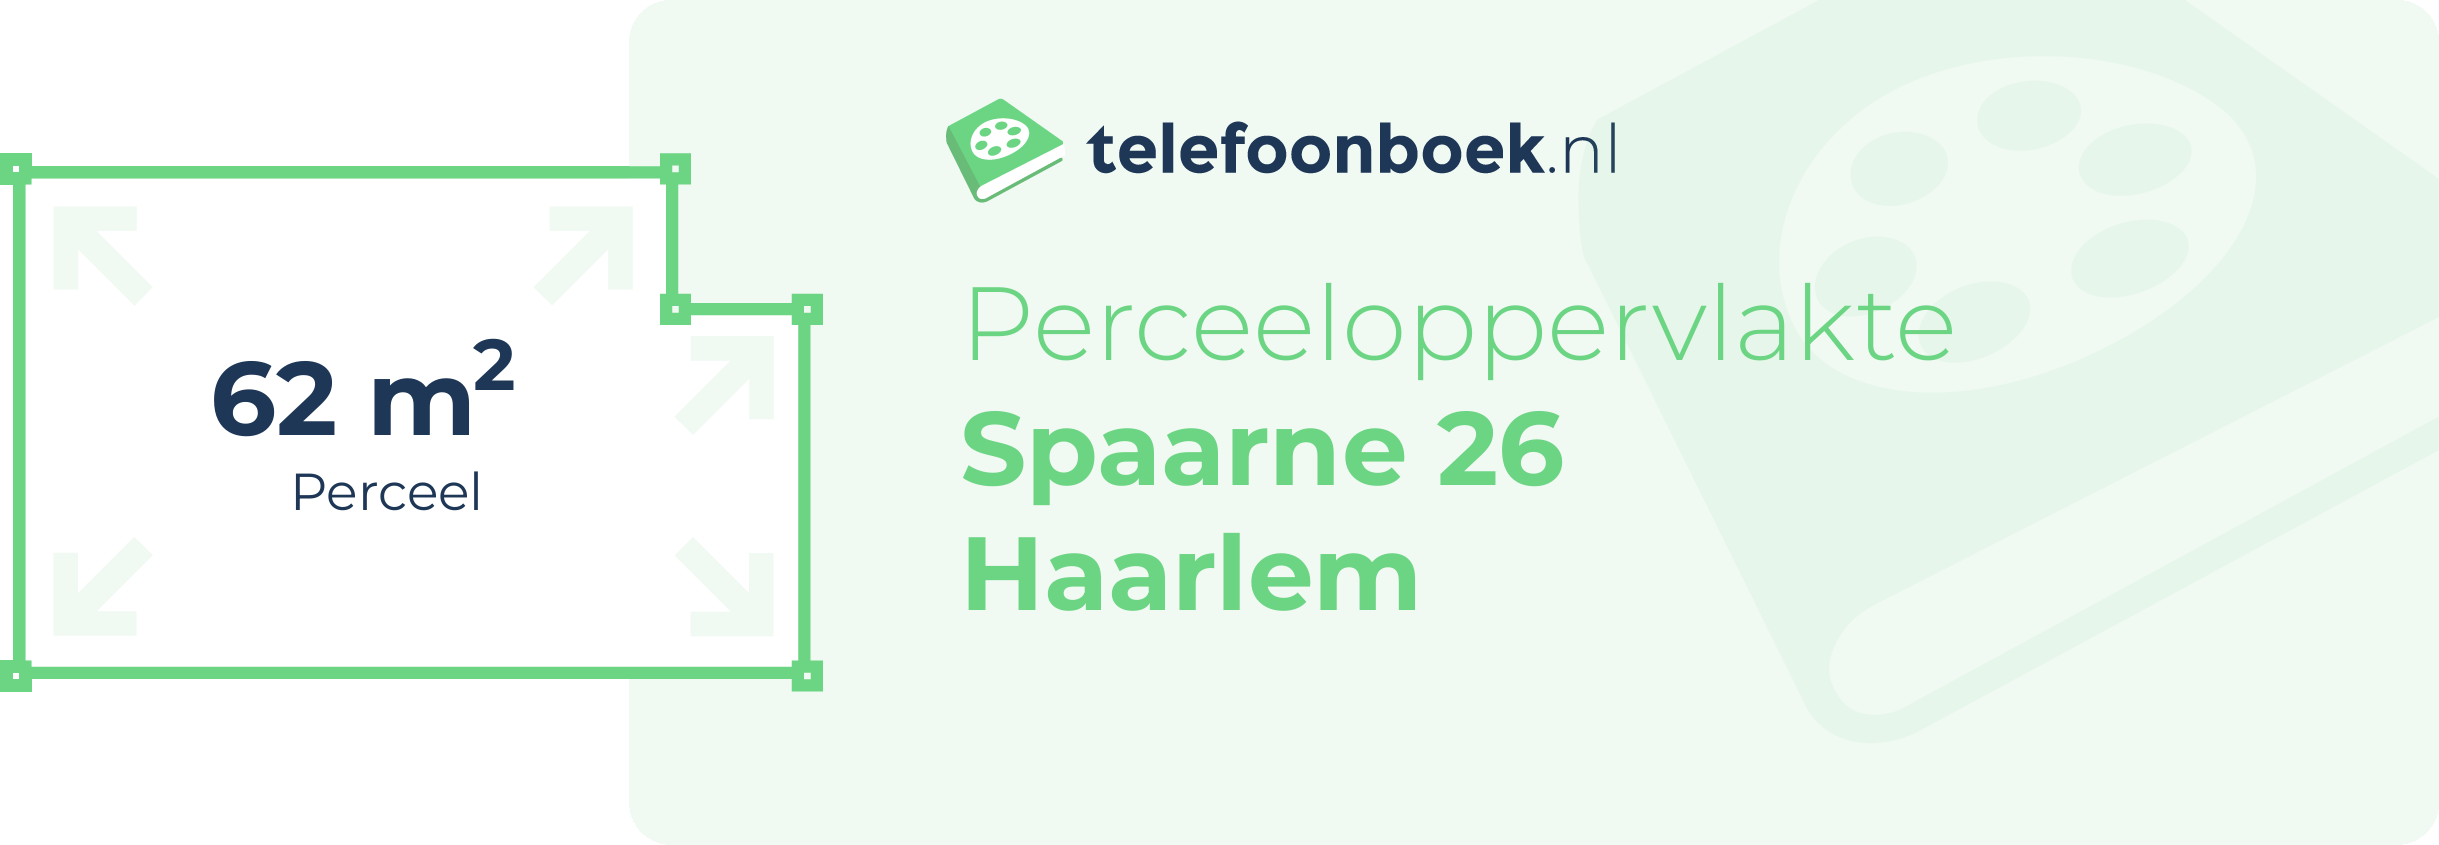 Perceeloppervlakte Spaarne 26 Haarlem